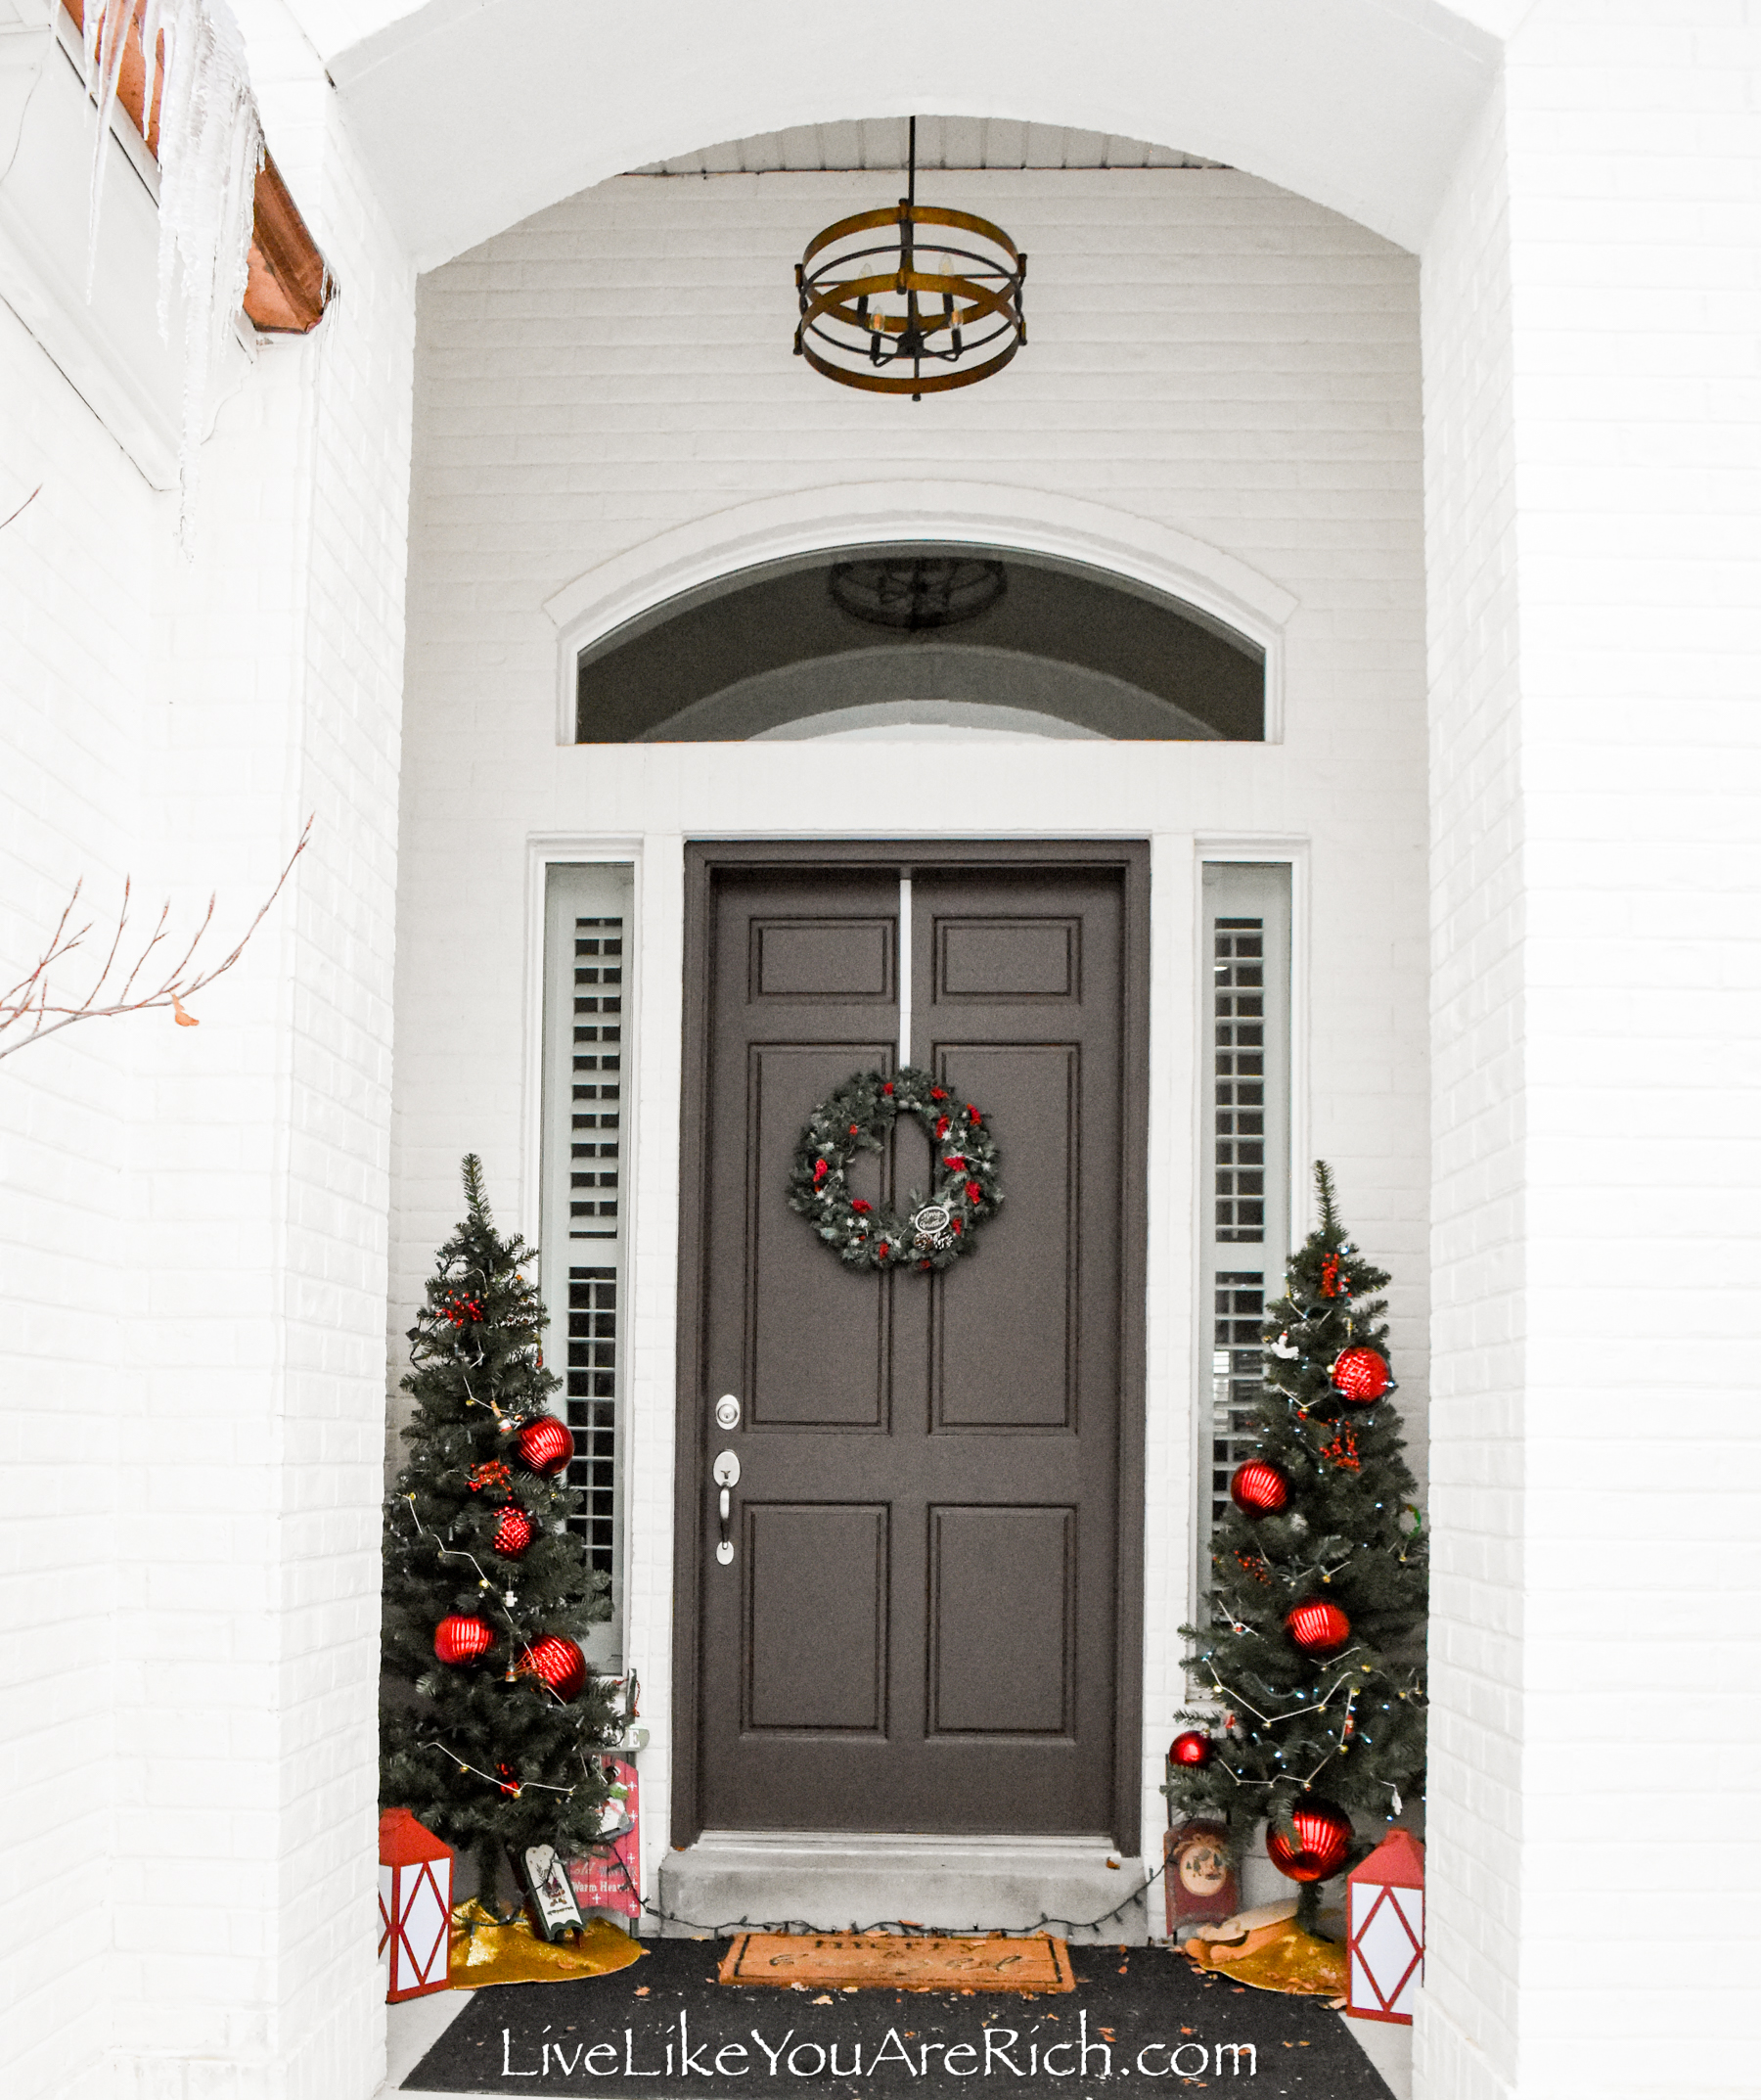 Winter Front Door Decor